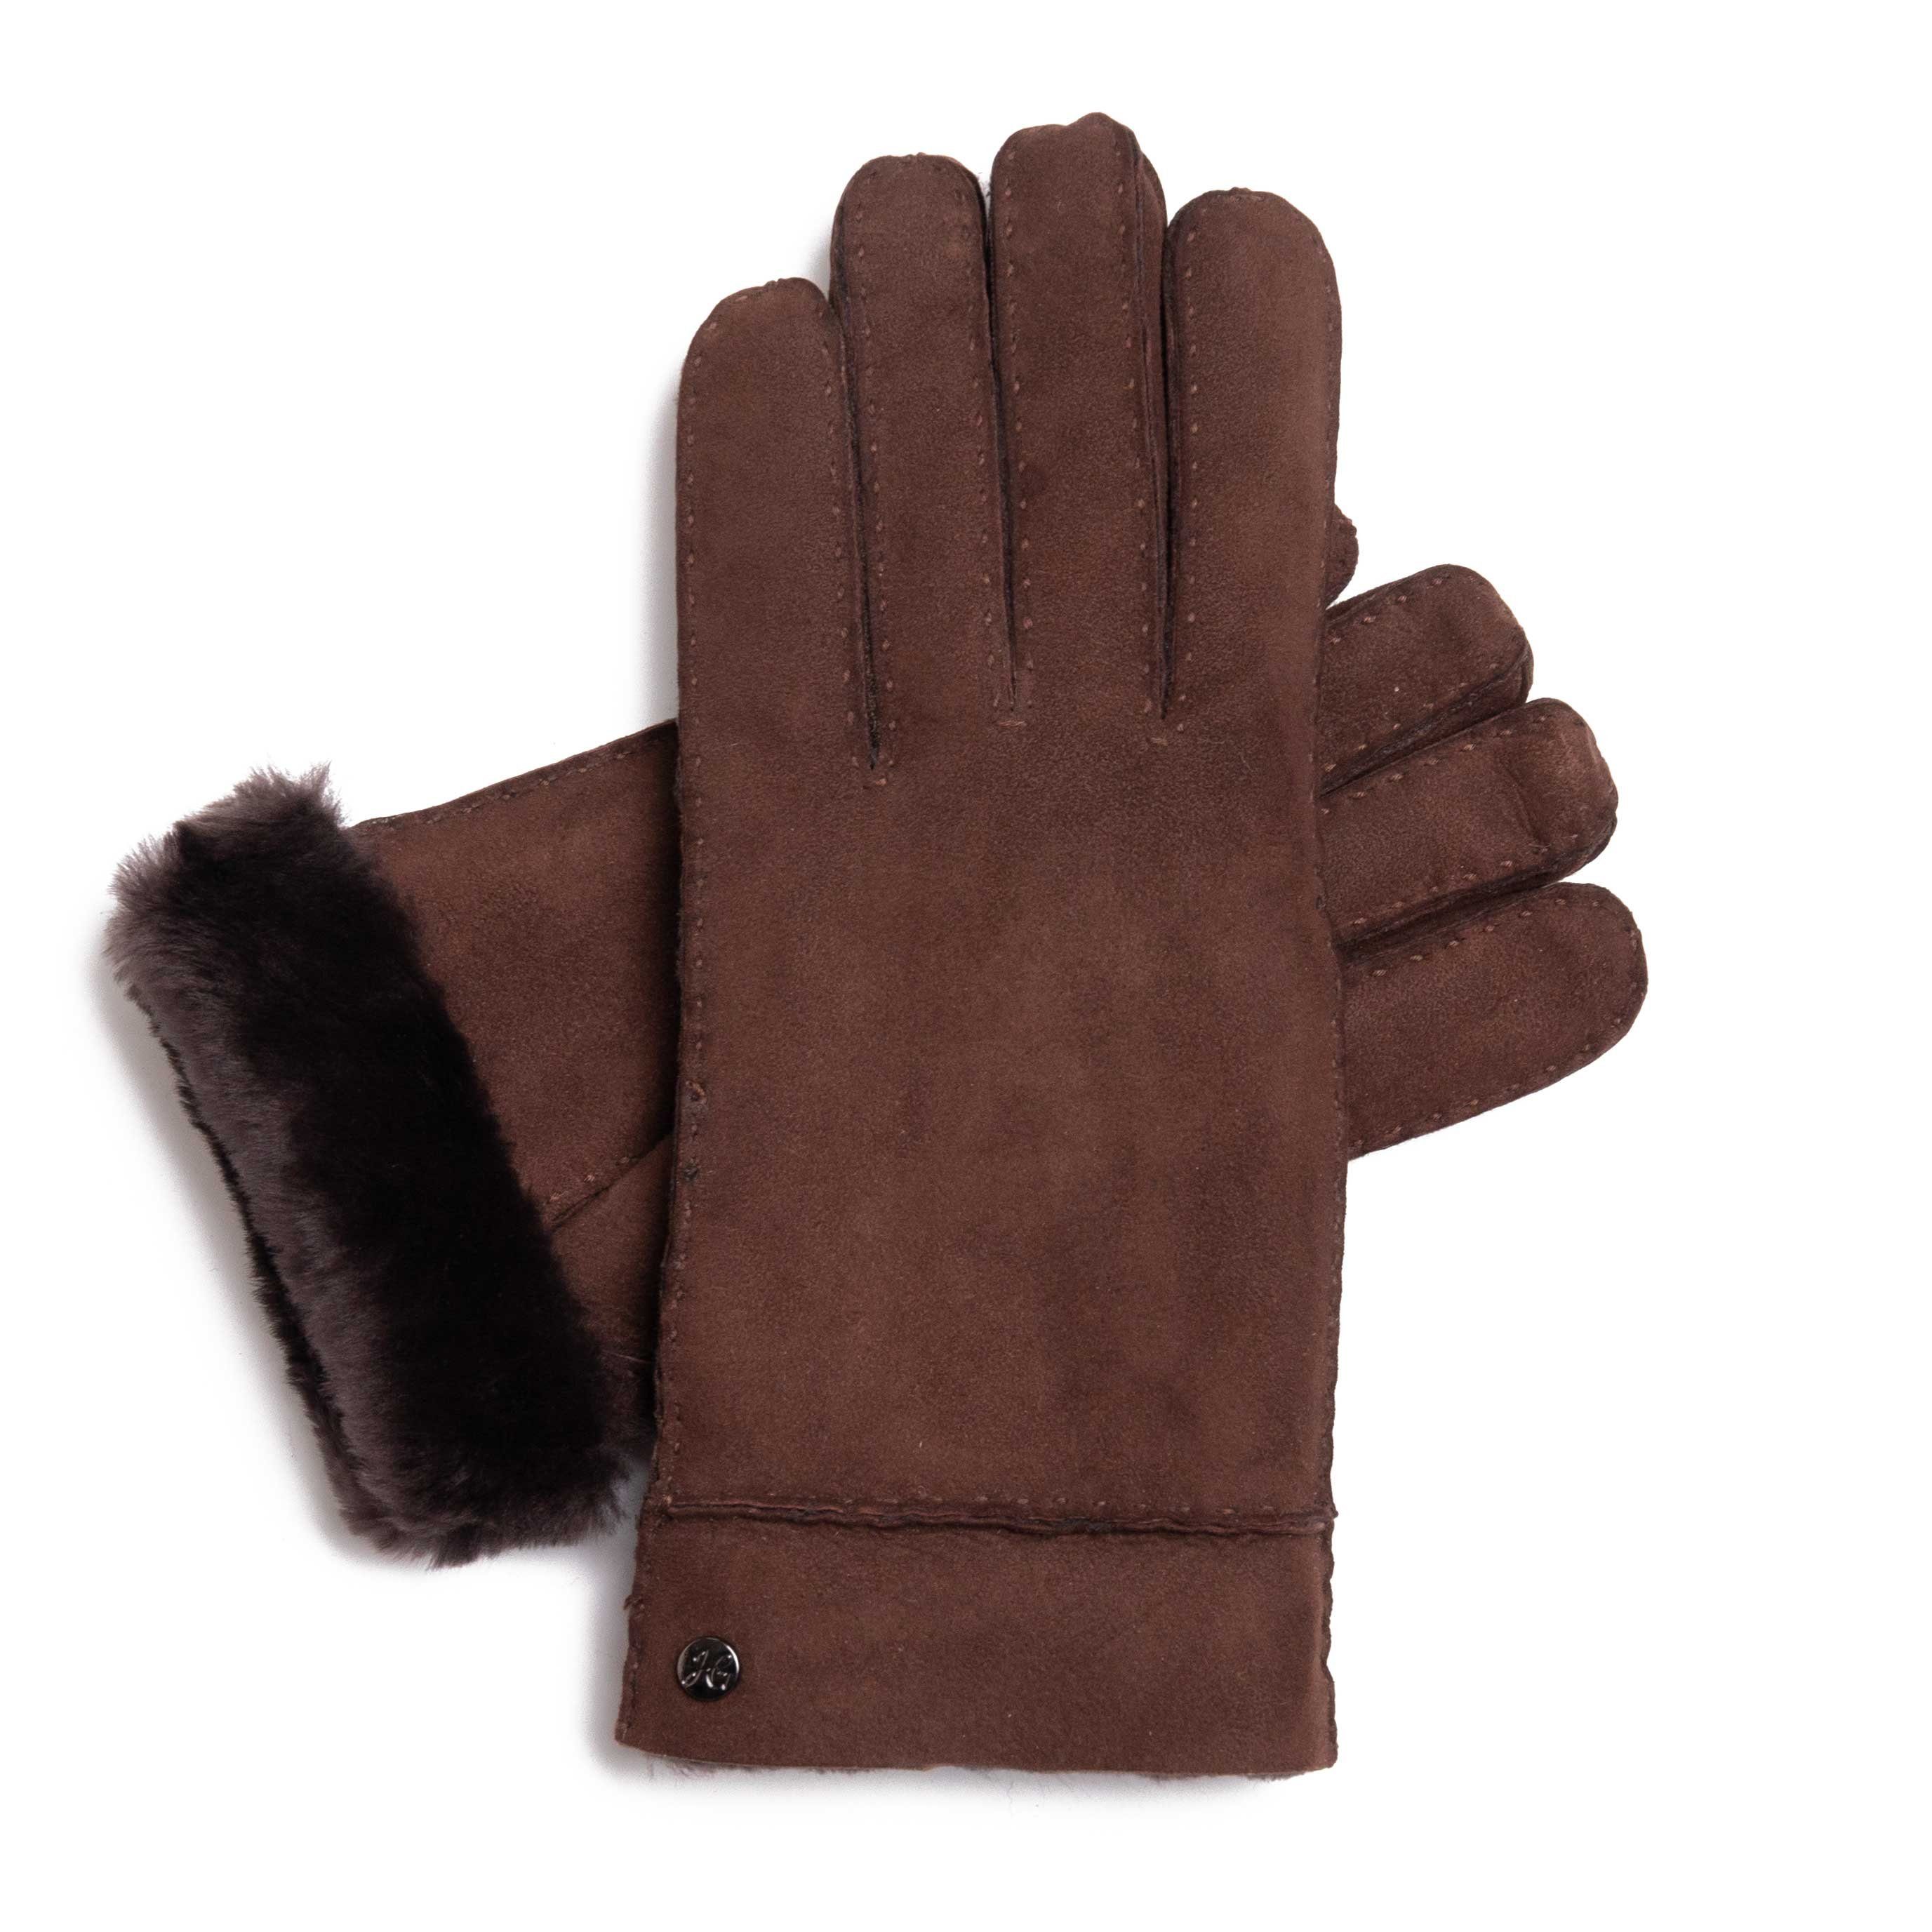 Hand Gewand by Weikert Lederhandschuhe EVA - Lammfell-Handschuhe aus spanischem Merino-Lammfell Dunkelbraun